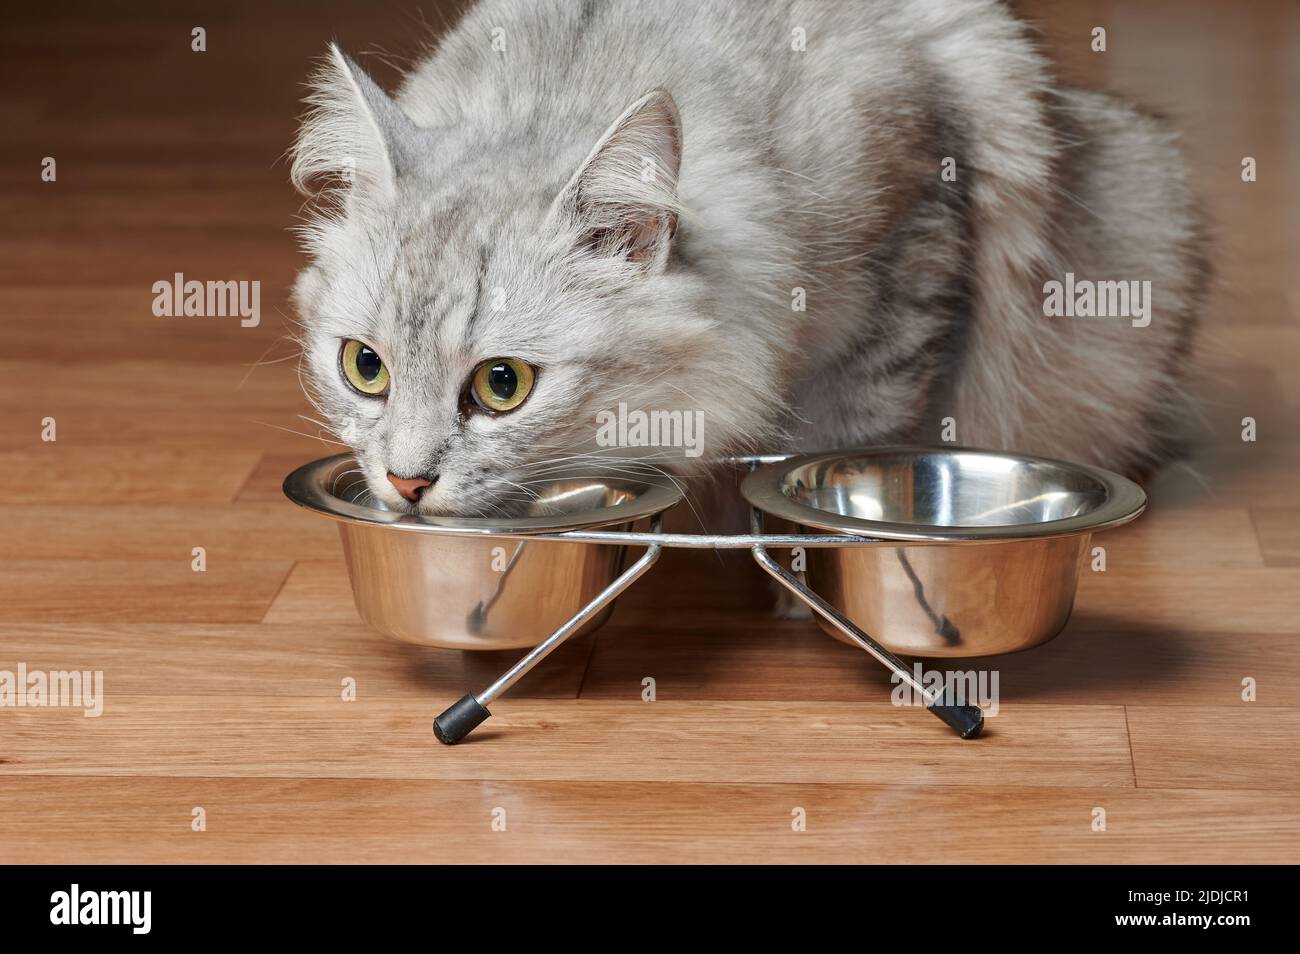 Portrait de manger le chat gris de la cuvette en métal dans le plancher de la maison Banque D'Images